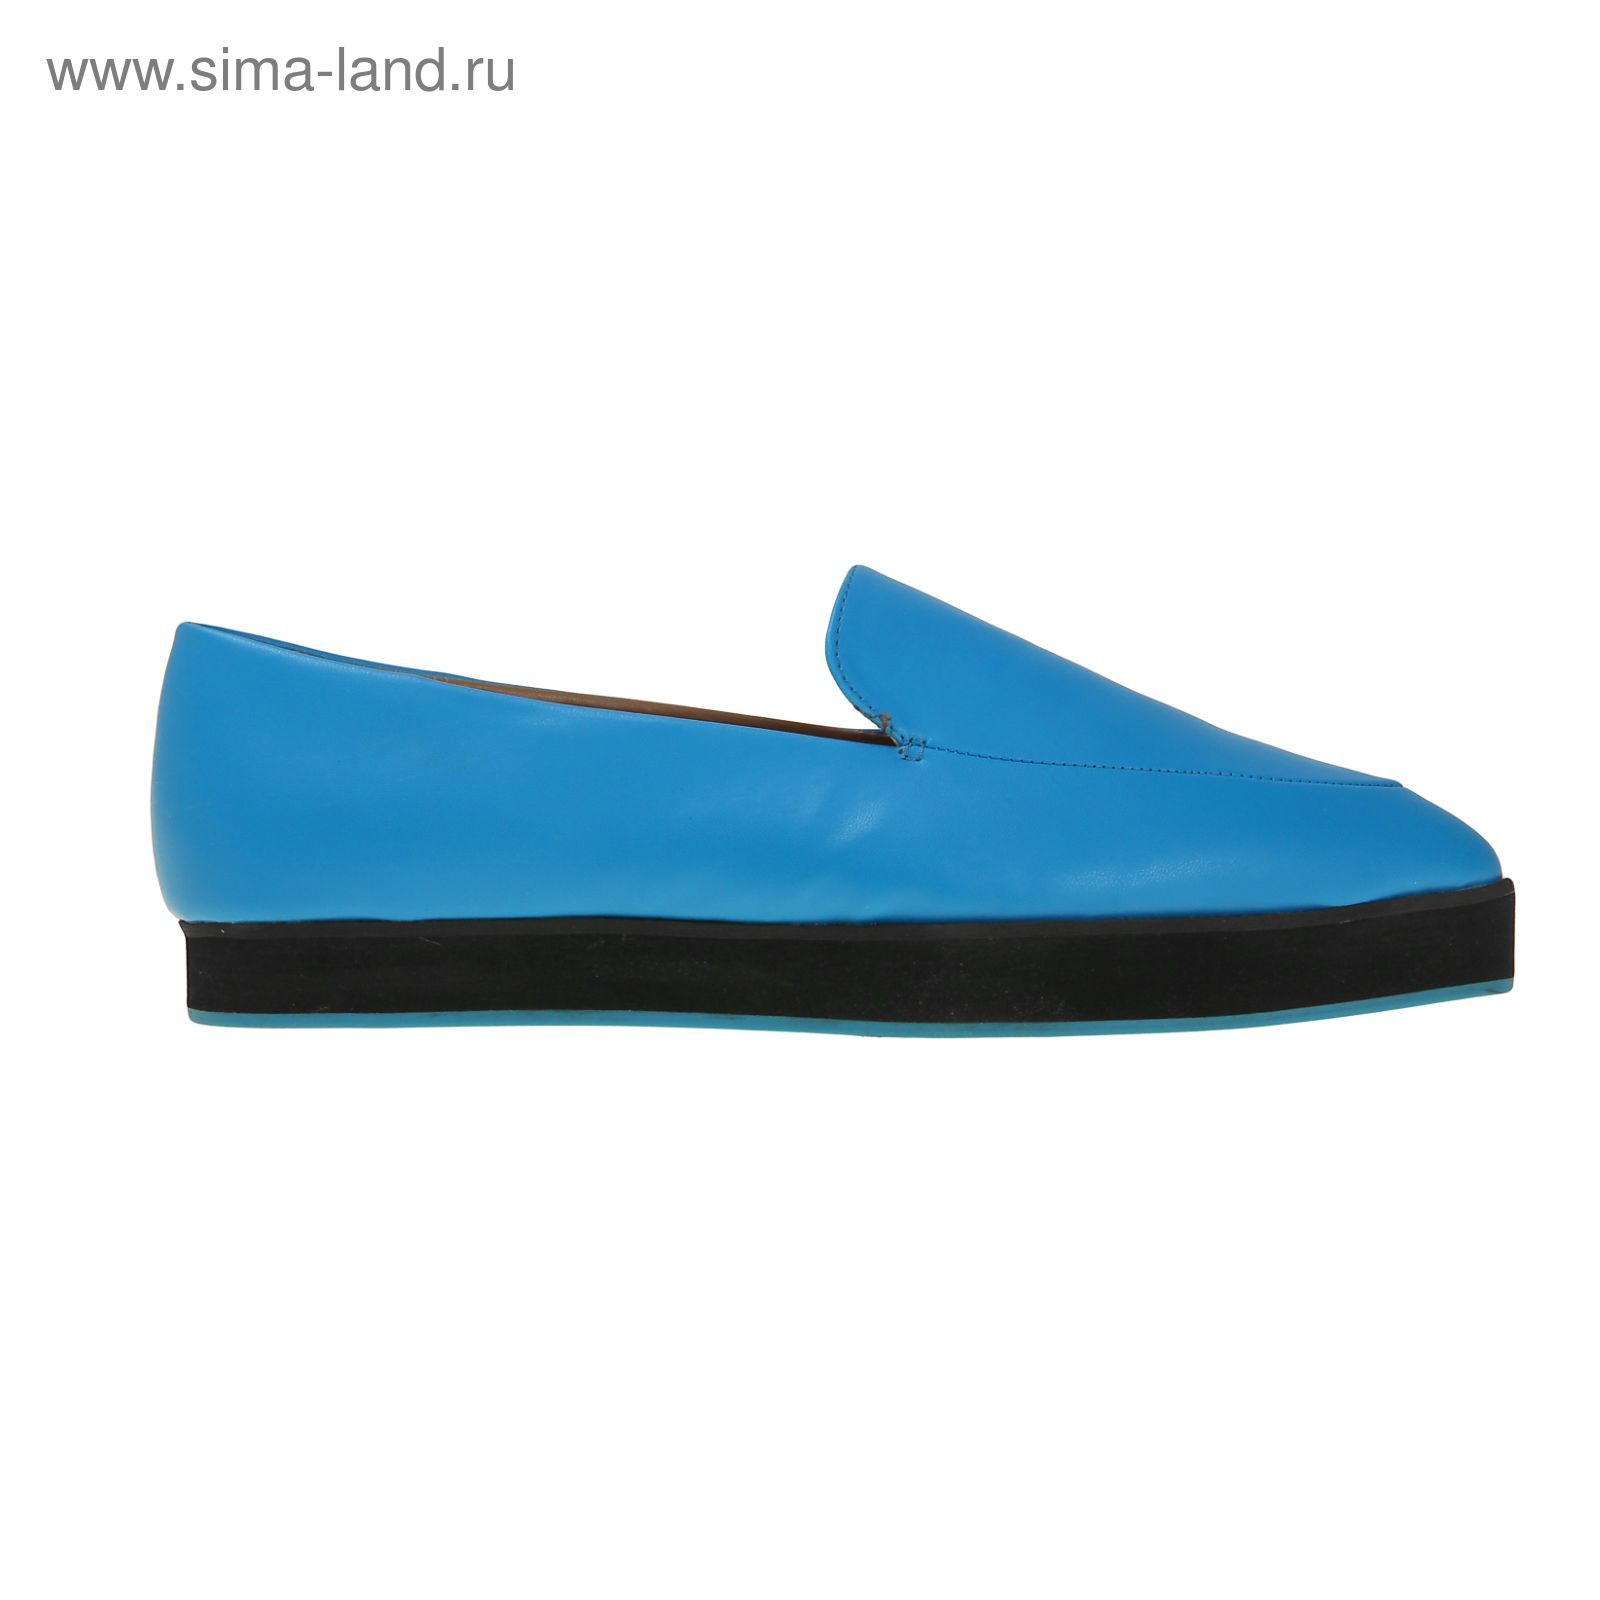 Туфли (лоферы) женские, цвет синий, размер 38 (арт. 1616033020)